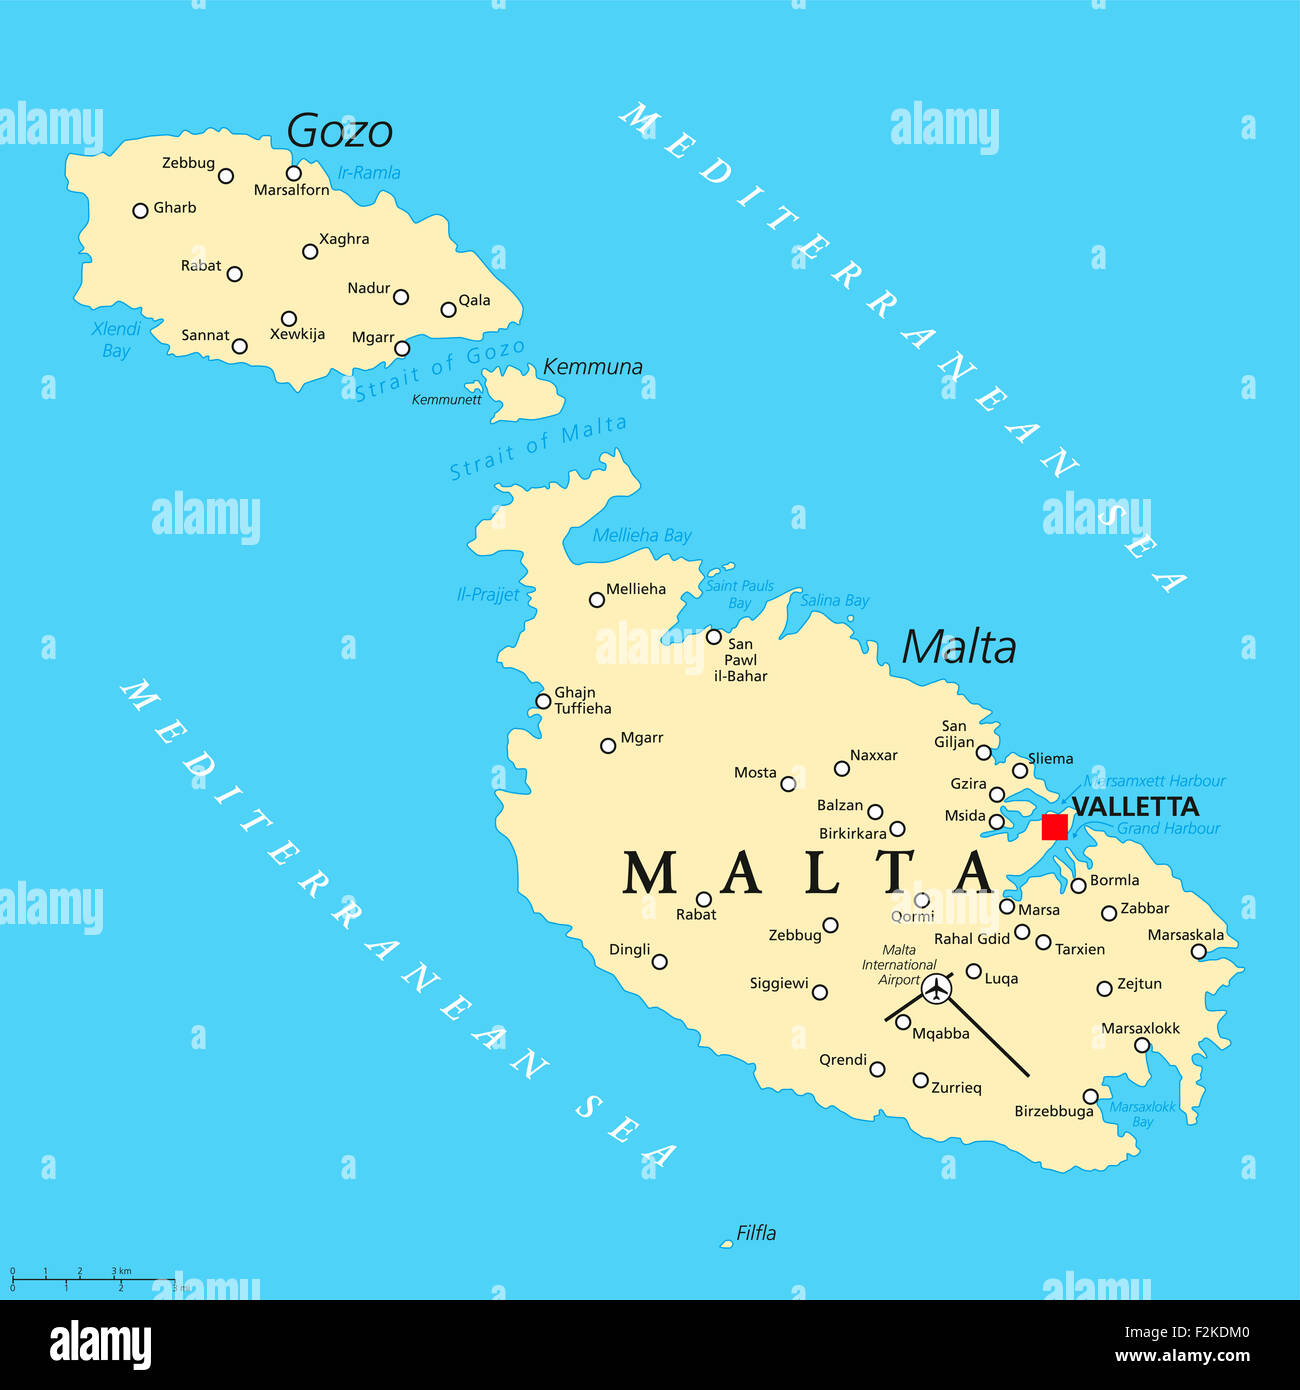 Malta mappa politico con la capitale Valletta e importanti città. Etichetta inglese e la scala. Illustrazione. Foto Stock